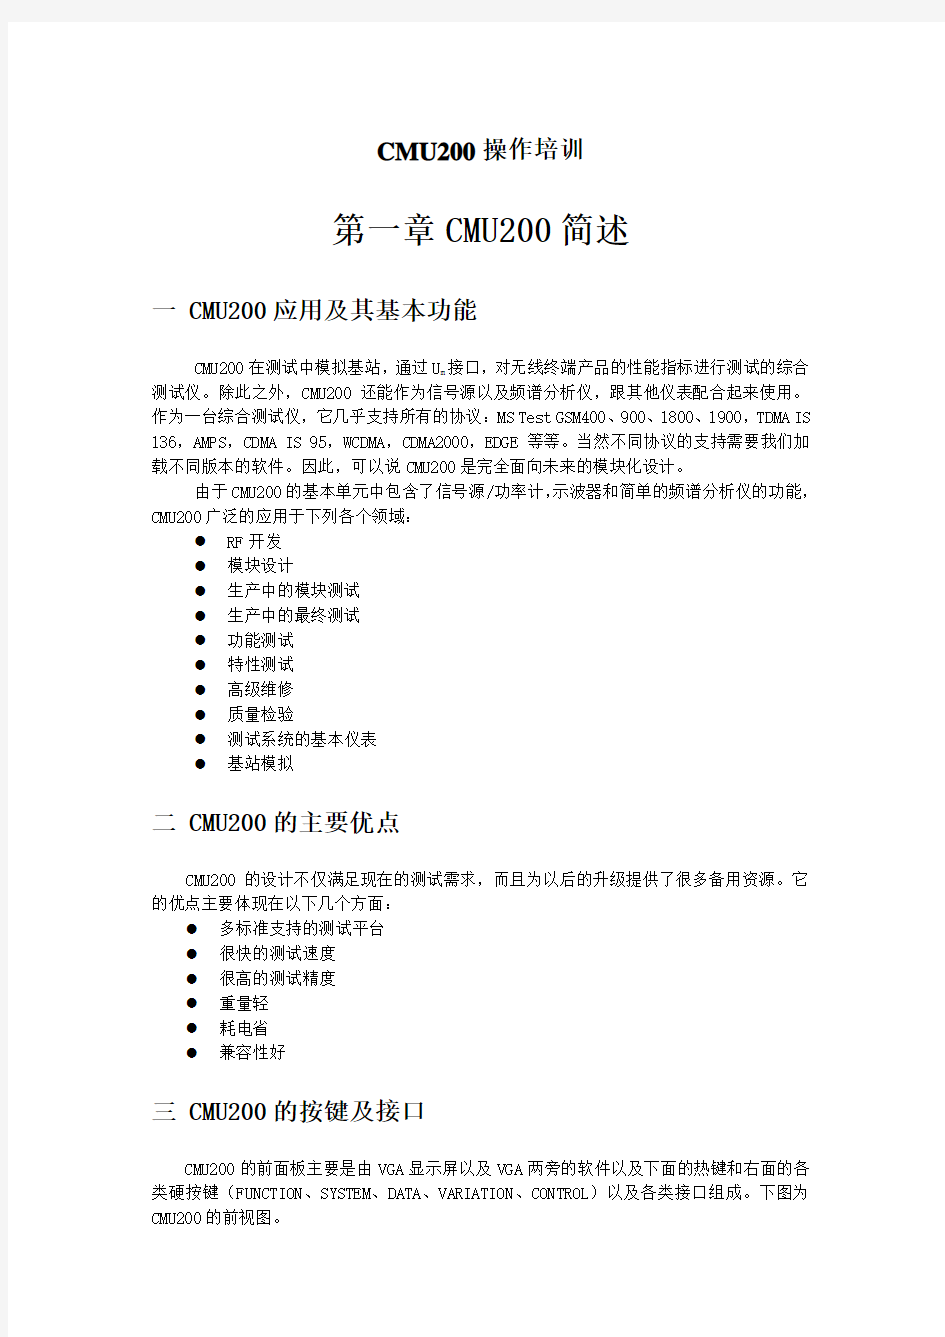 CMU200中文说明书